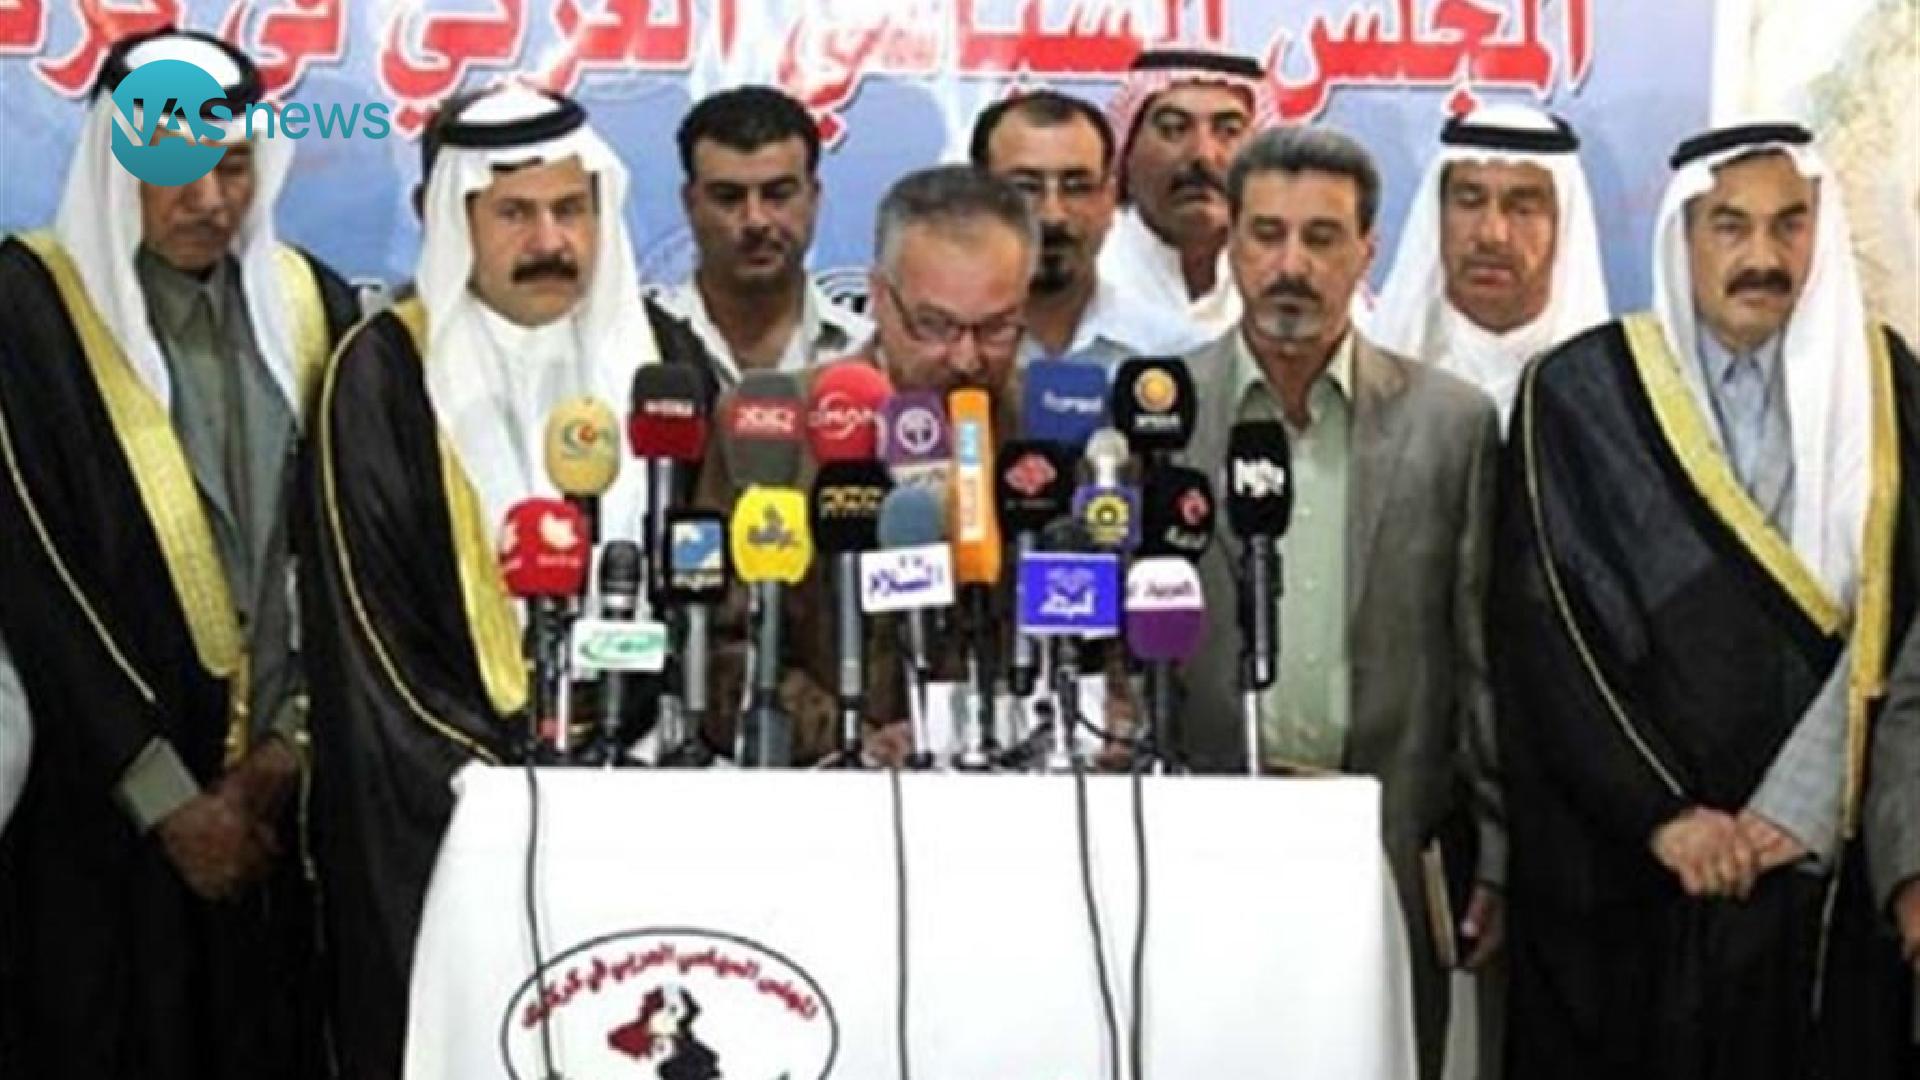 عرب كركوك يطالبون مفوضية الانتخابات بتغيير مديرة مكتبها في المحافظة لكونها تعمل لصالح الأكراد